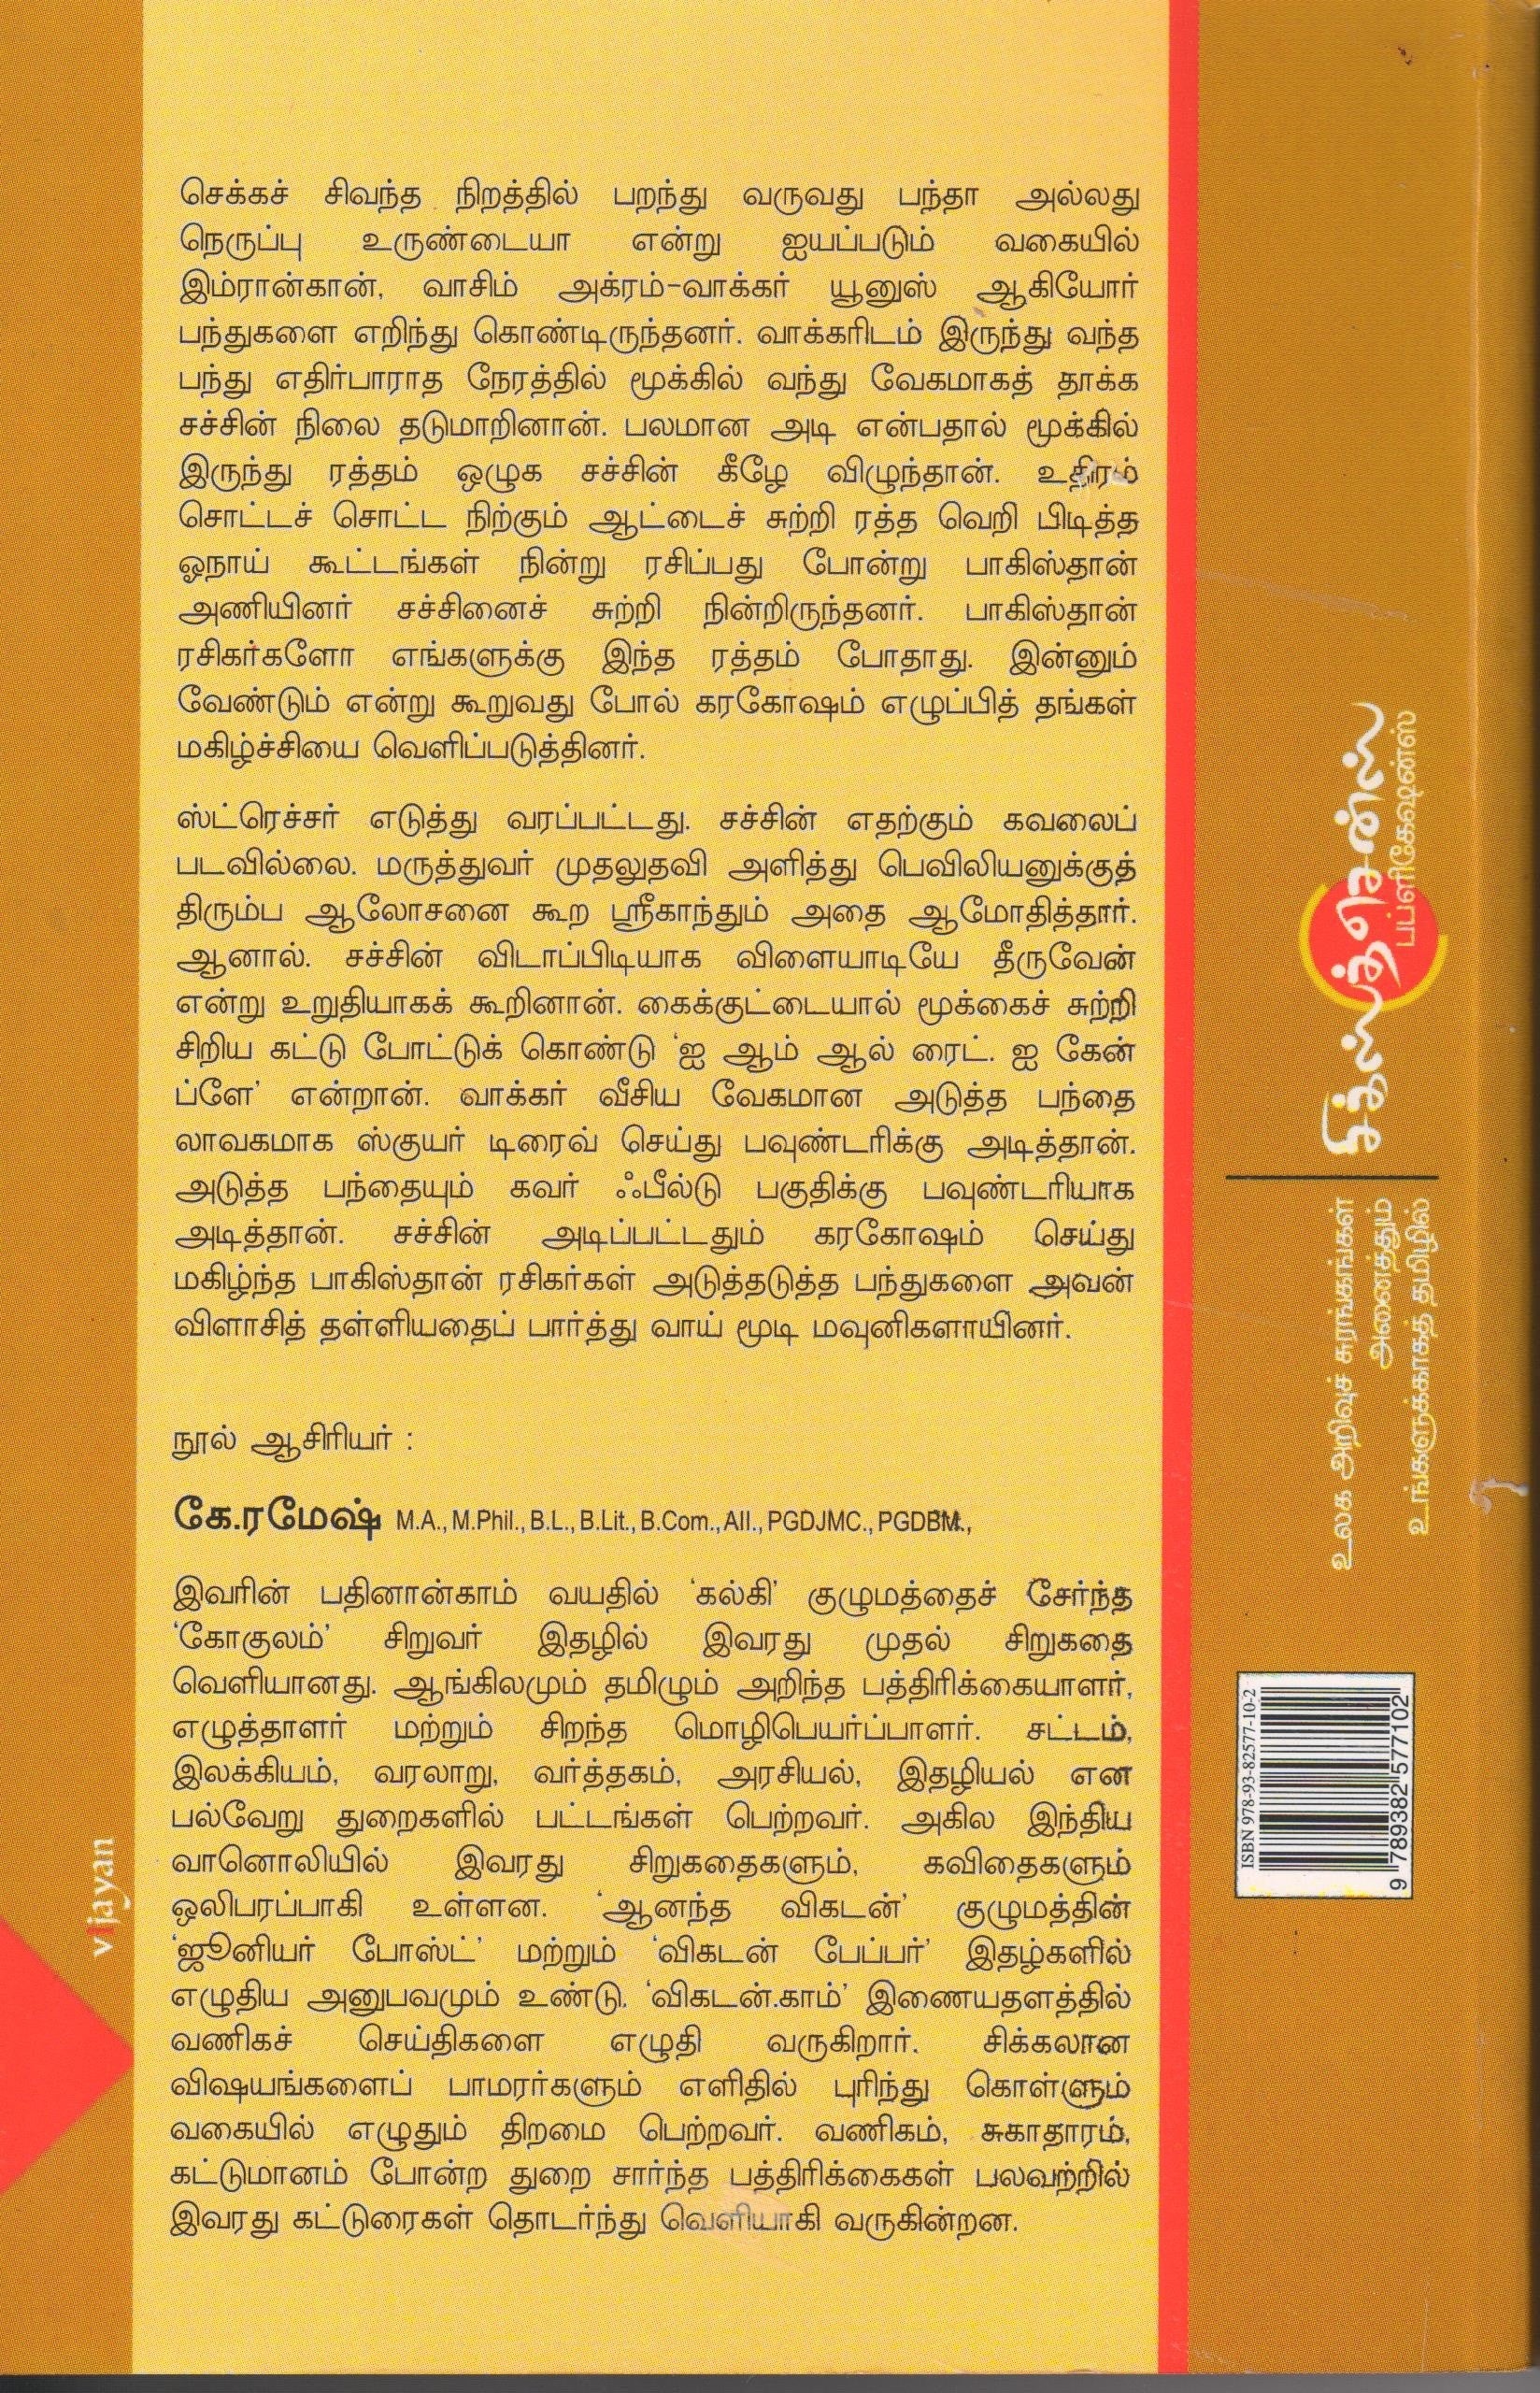 சச்சின் ஒரு சுனாமியின் சரித்திரம் Sachin: Oru Sunamiyin Sarithiram(Tamil Books) - Faritha